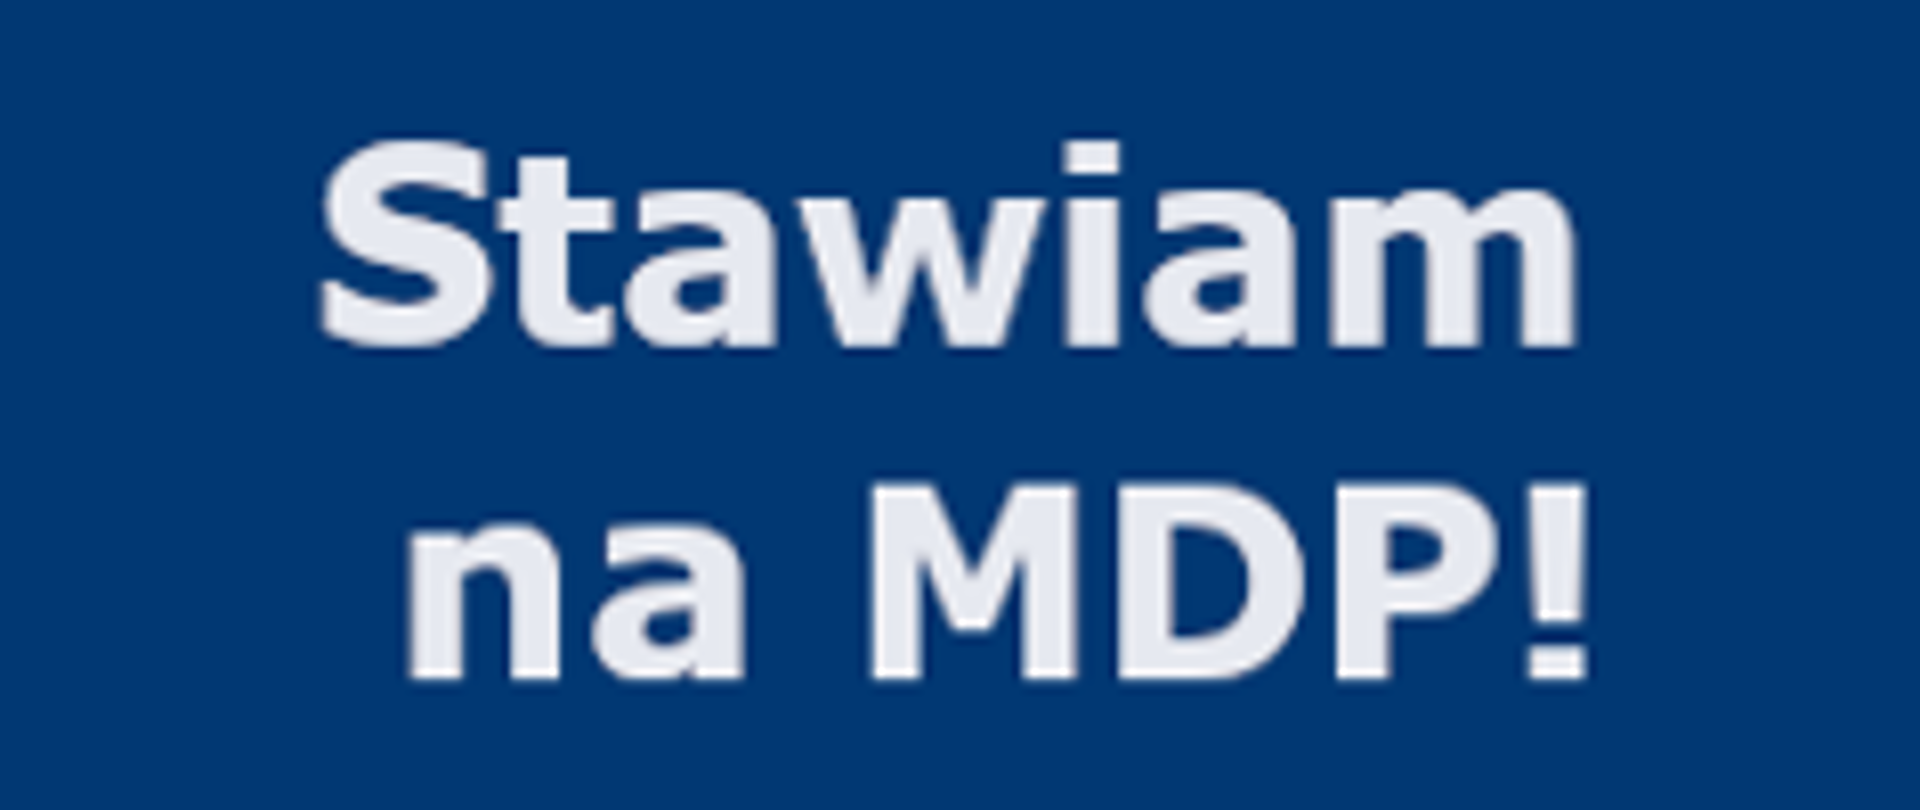 Baner z napisem i logiem akcji Stawiam na MDP 